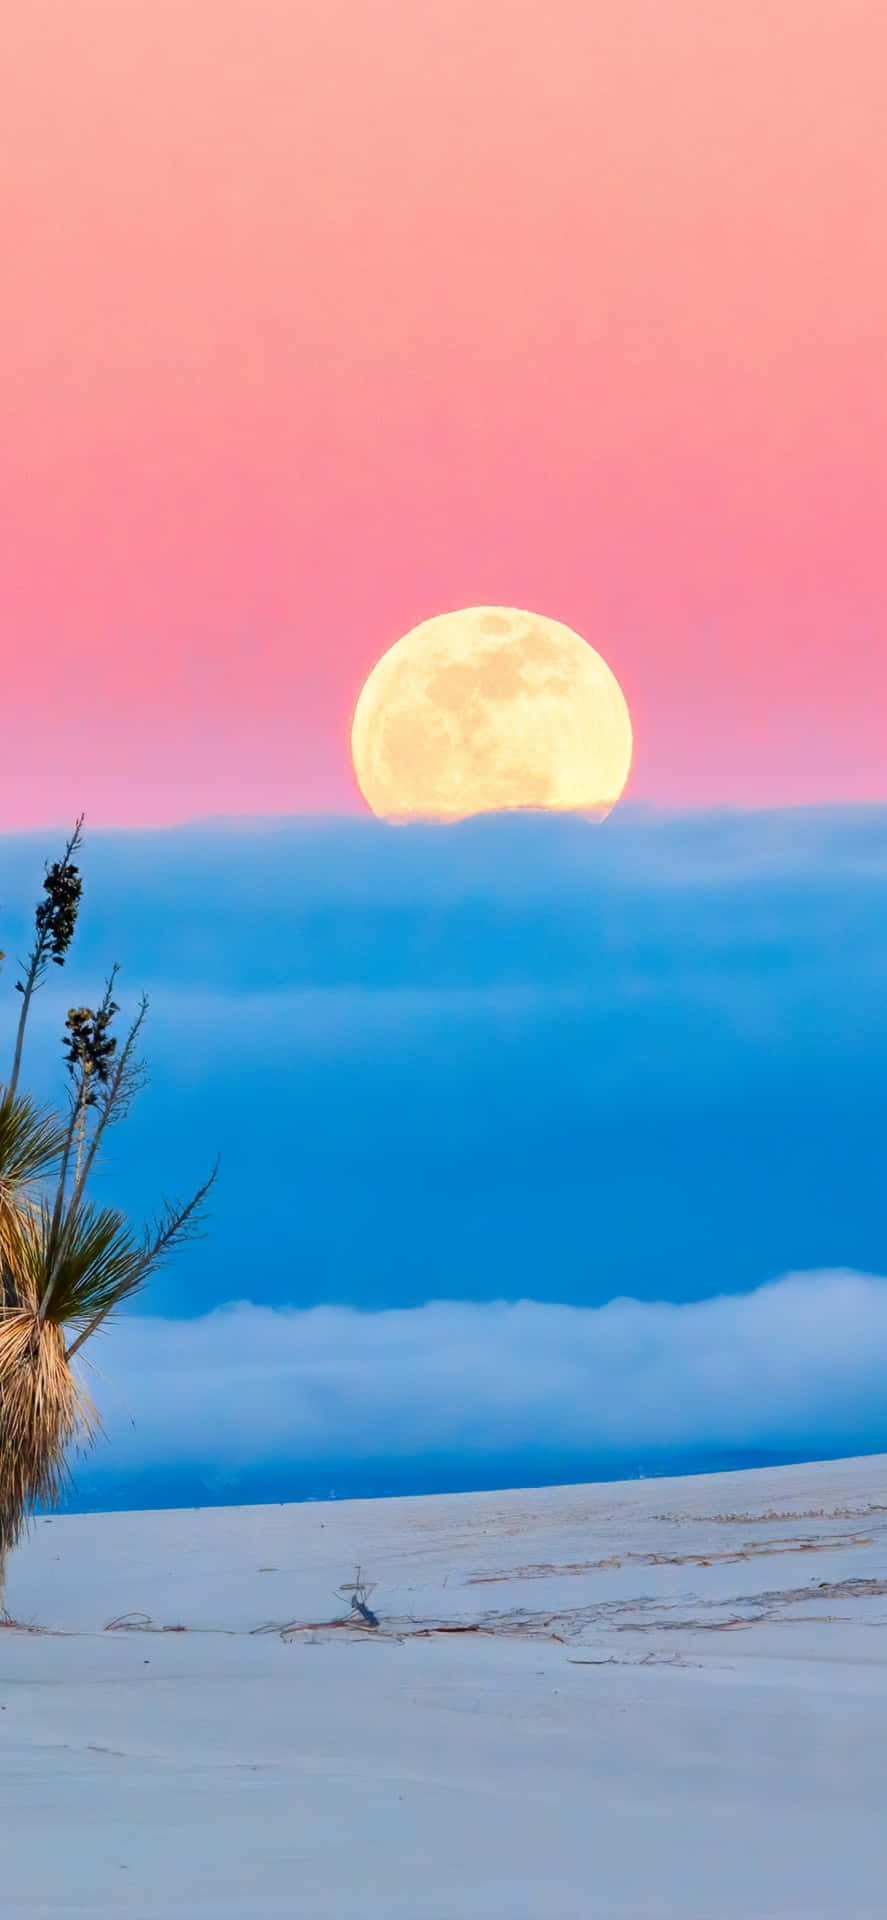 A Full Moon Rises Over A Desert